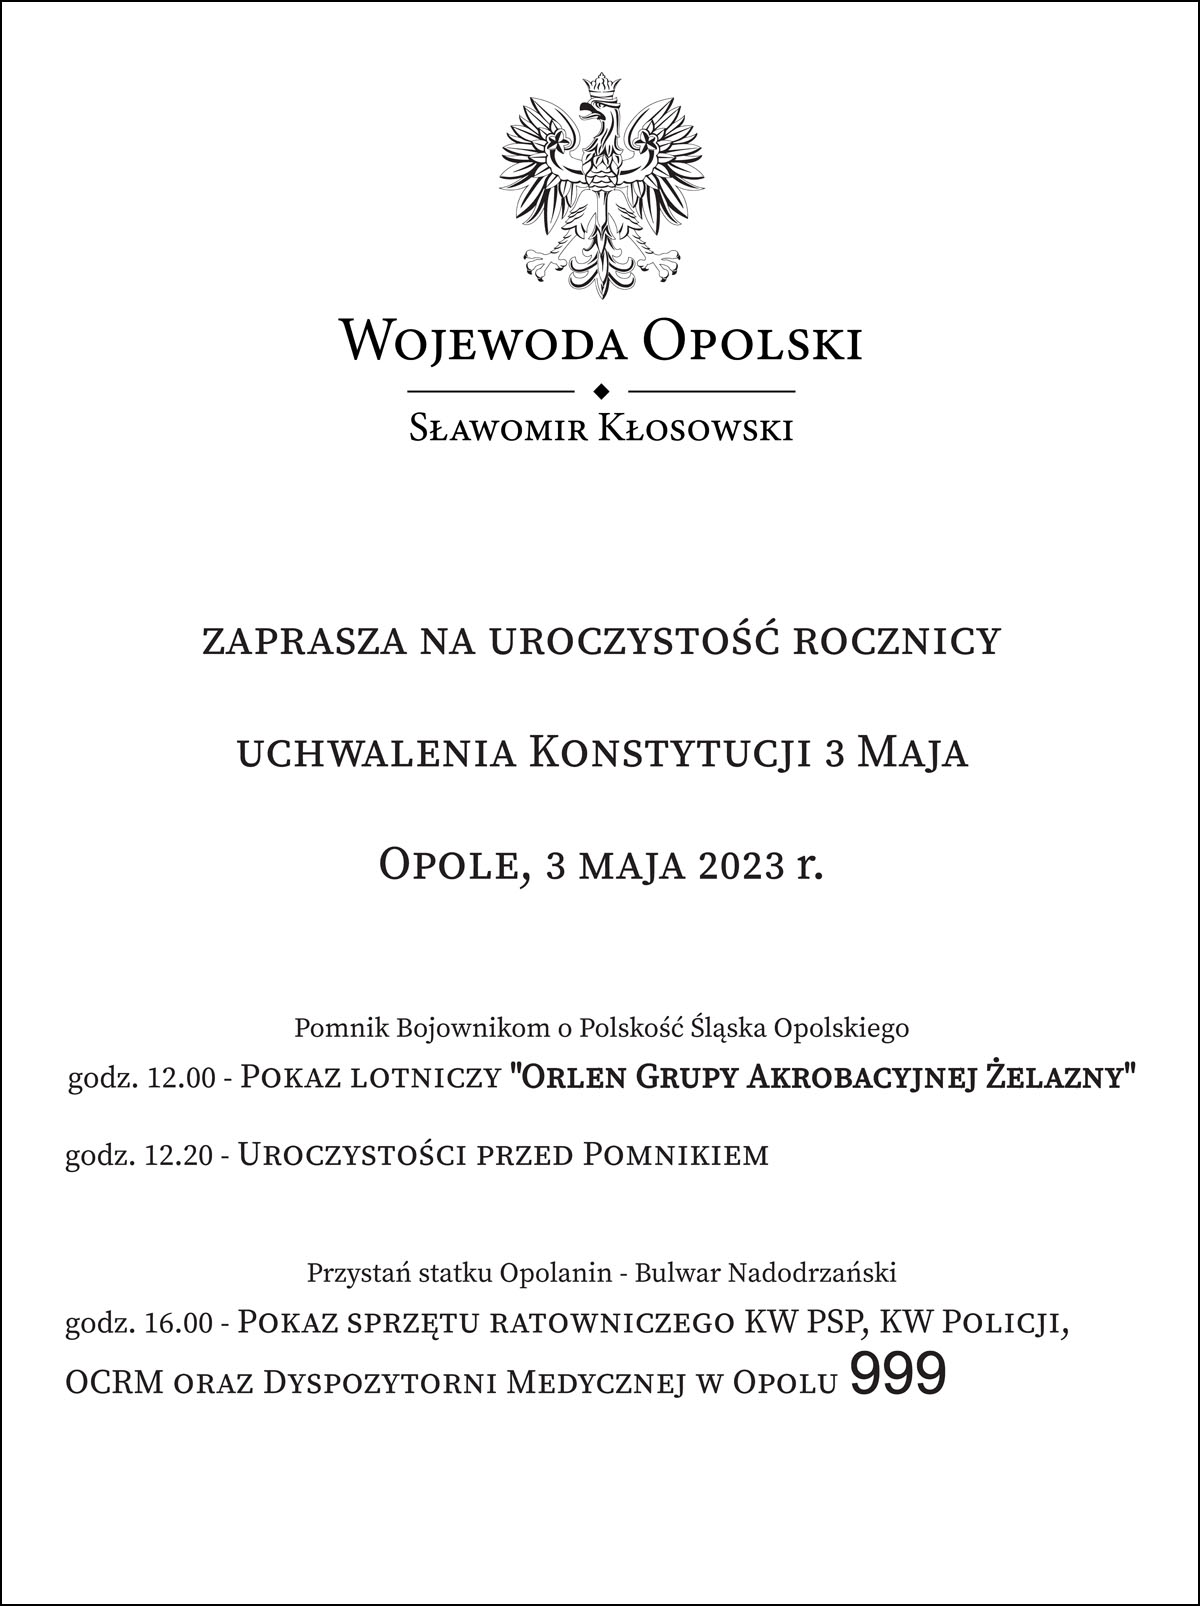 Wojewoda opolski zaprasza na uroczystości z okazji 232. rocznicy uchwalenia Konstytucji 3 Maja.